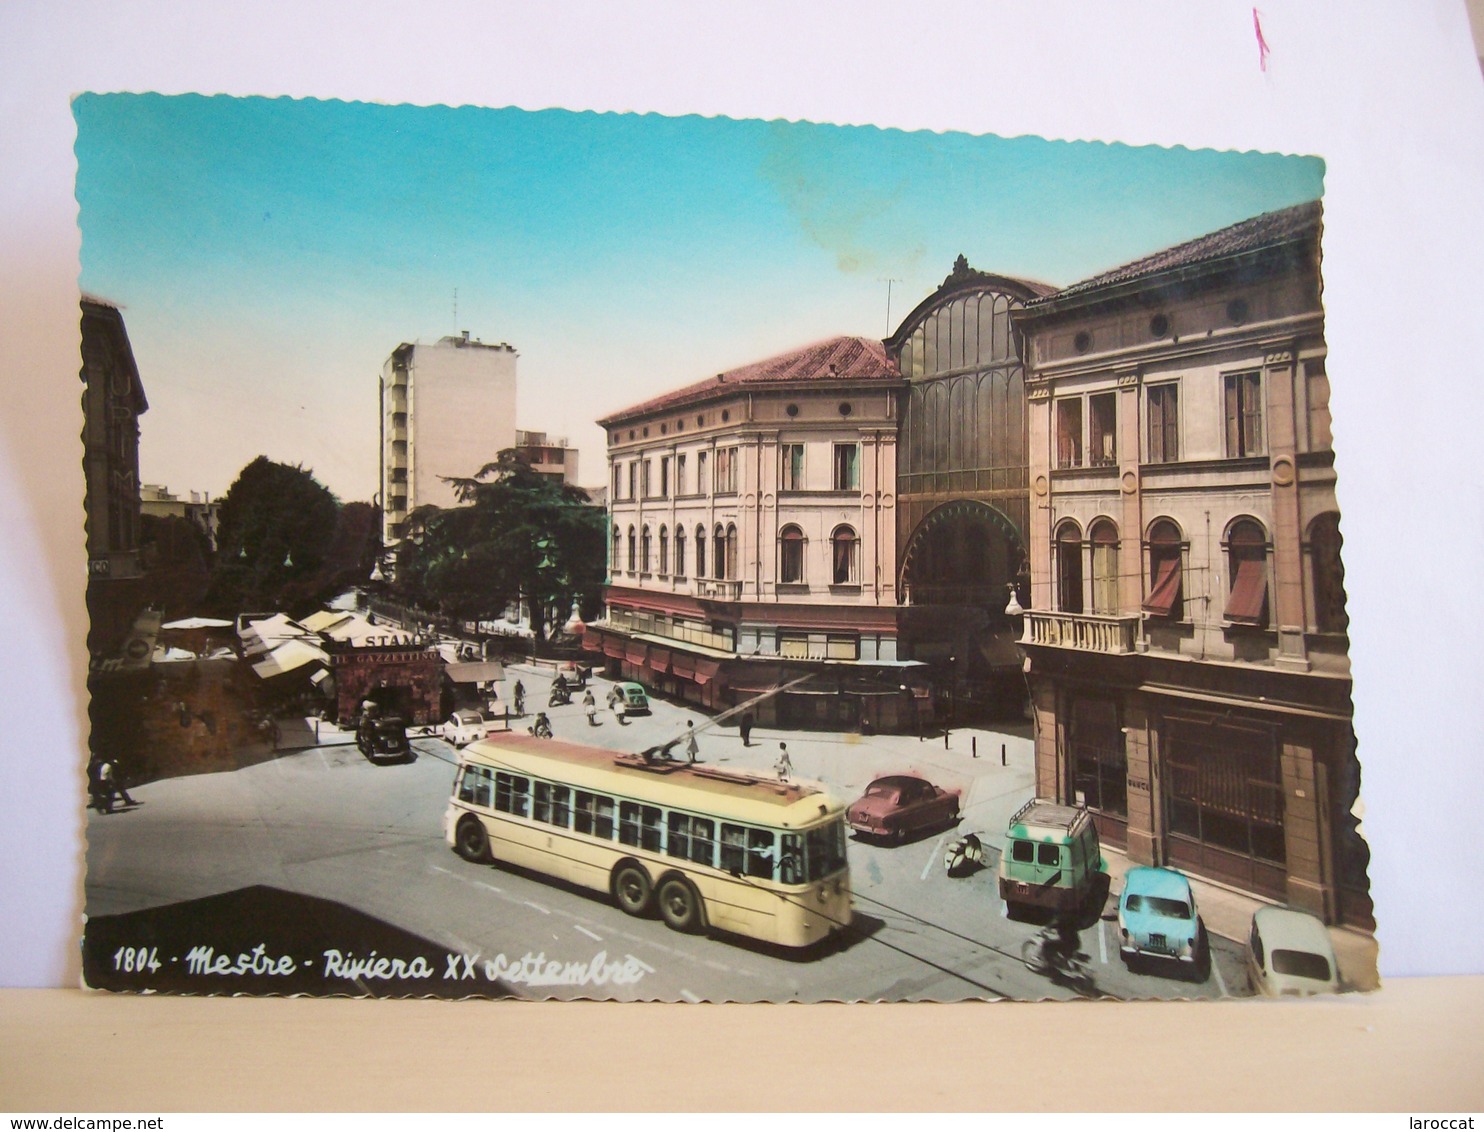 1960 - Venezia - Mestre - Riviera XX Settembre - Banca Di Credito - Filobus Bus Autobus - Morassutti P. - Edicola - Venezia